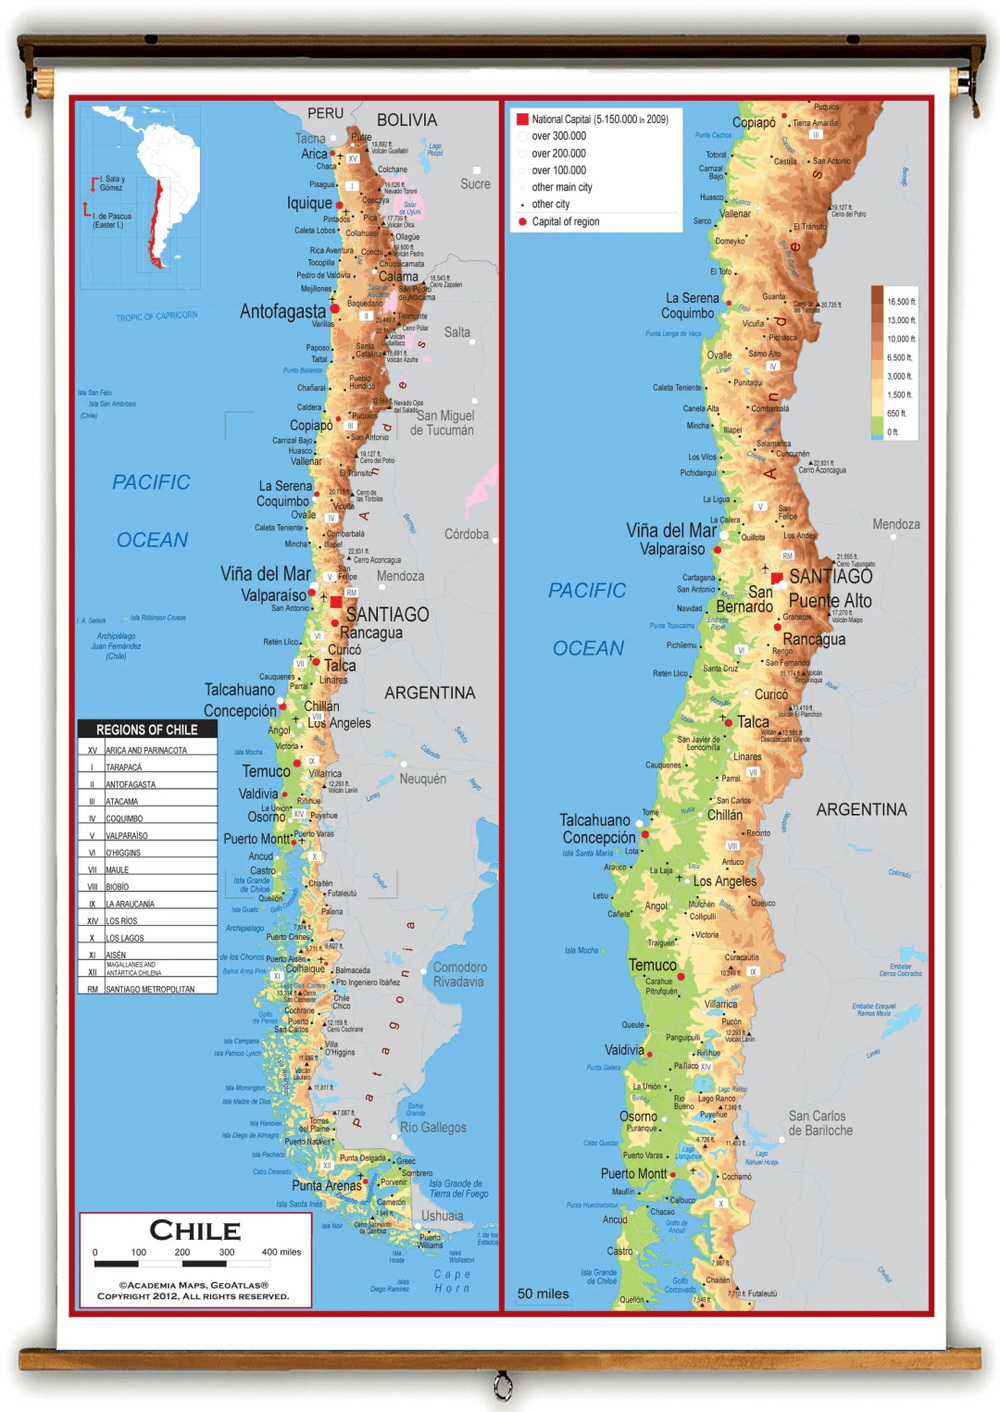 ▲地形限制智利向东扩张<br>